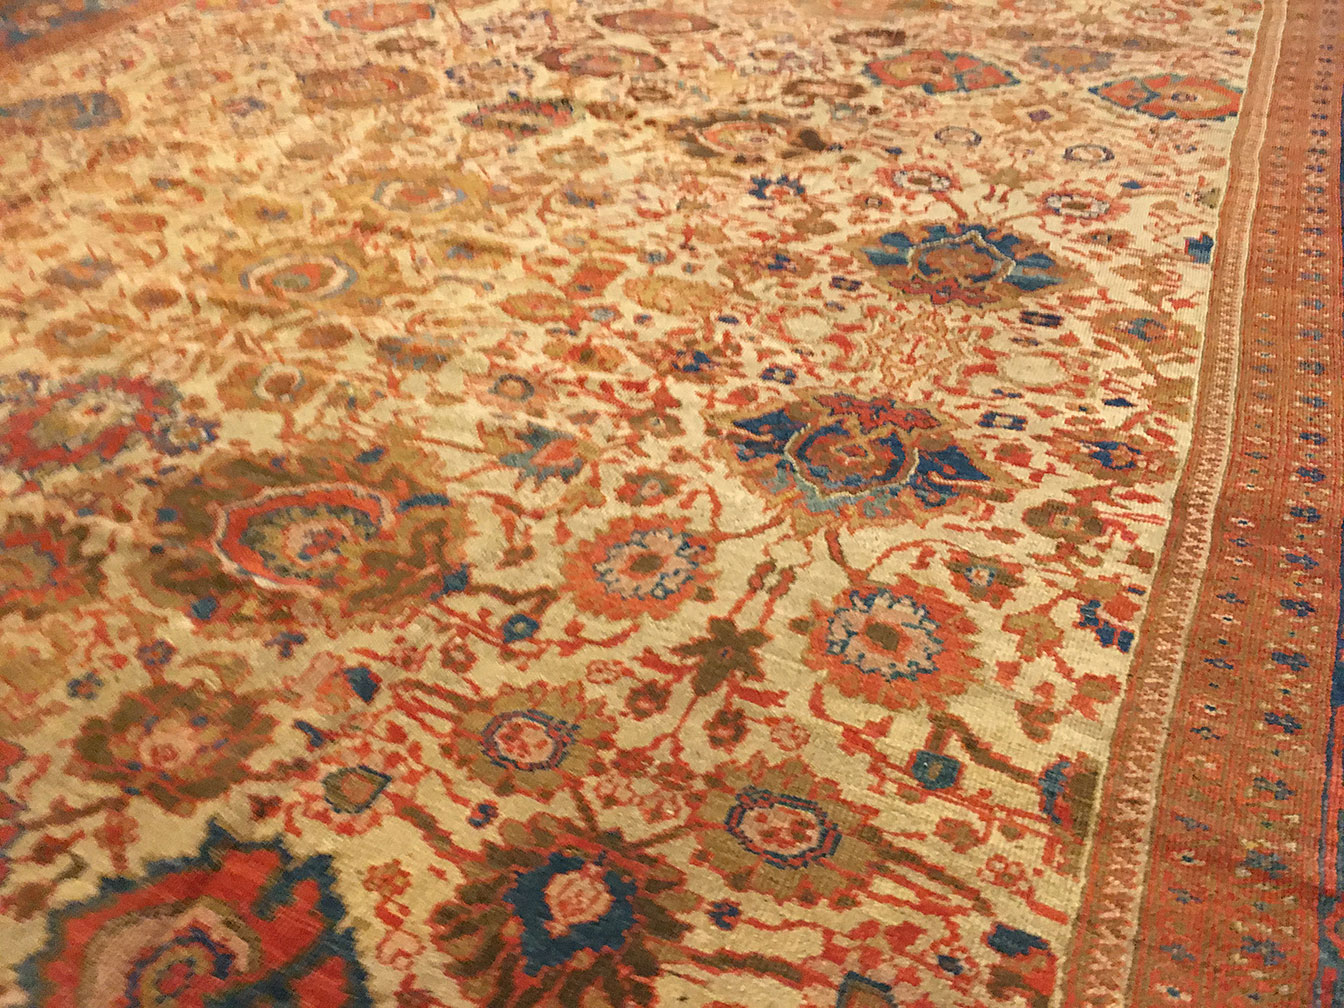 Antique sultan abad Carpet - # 51427